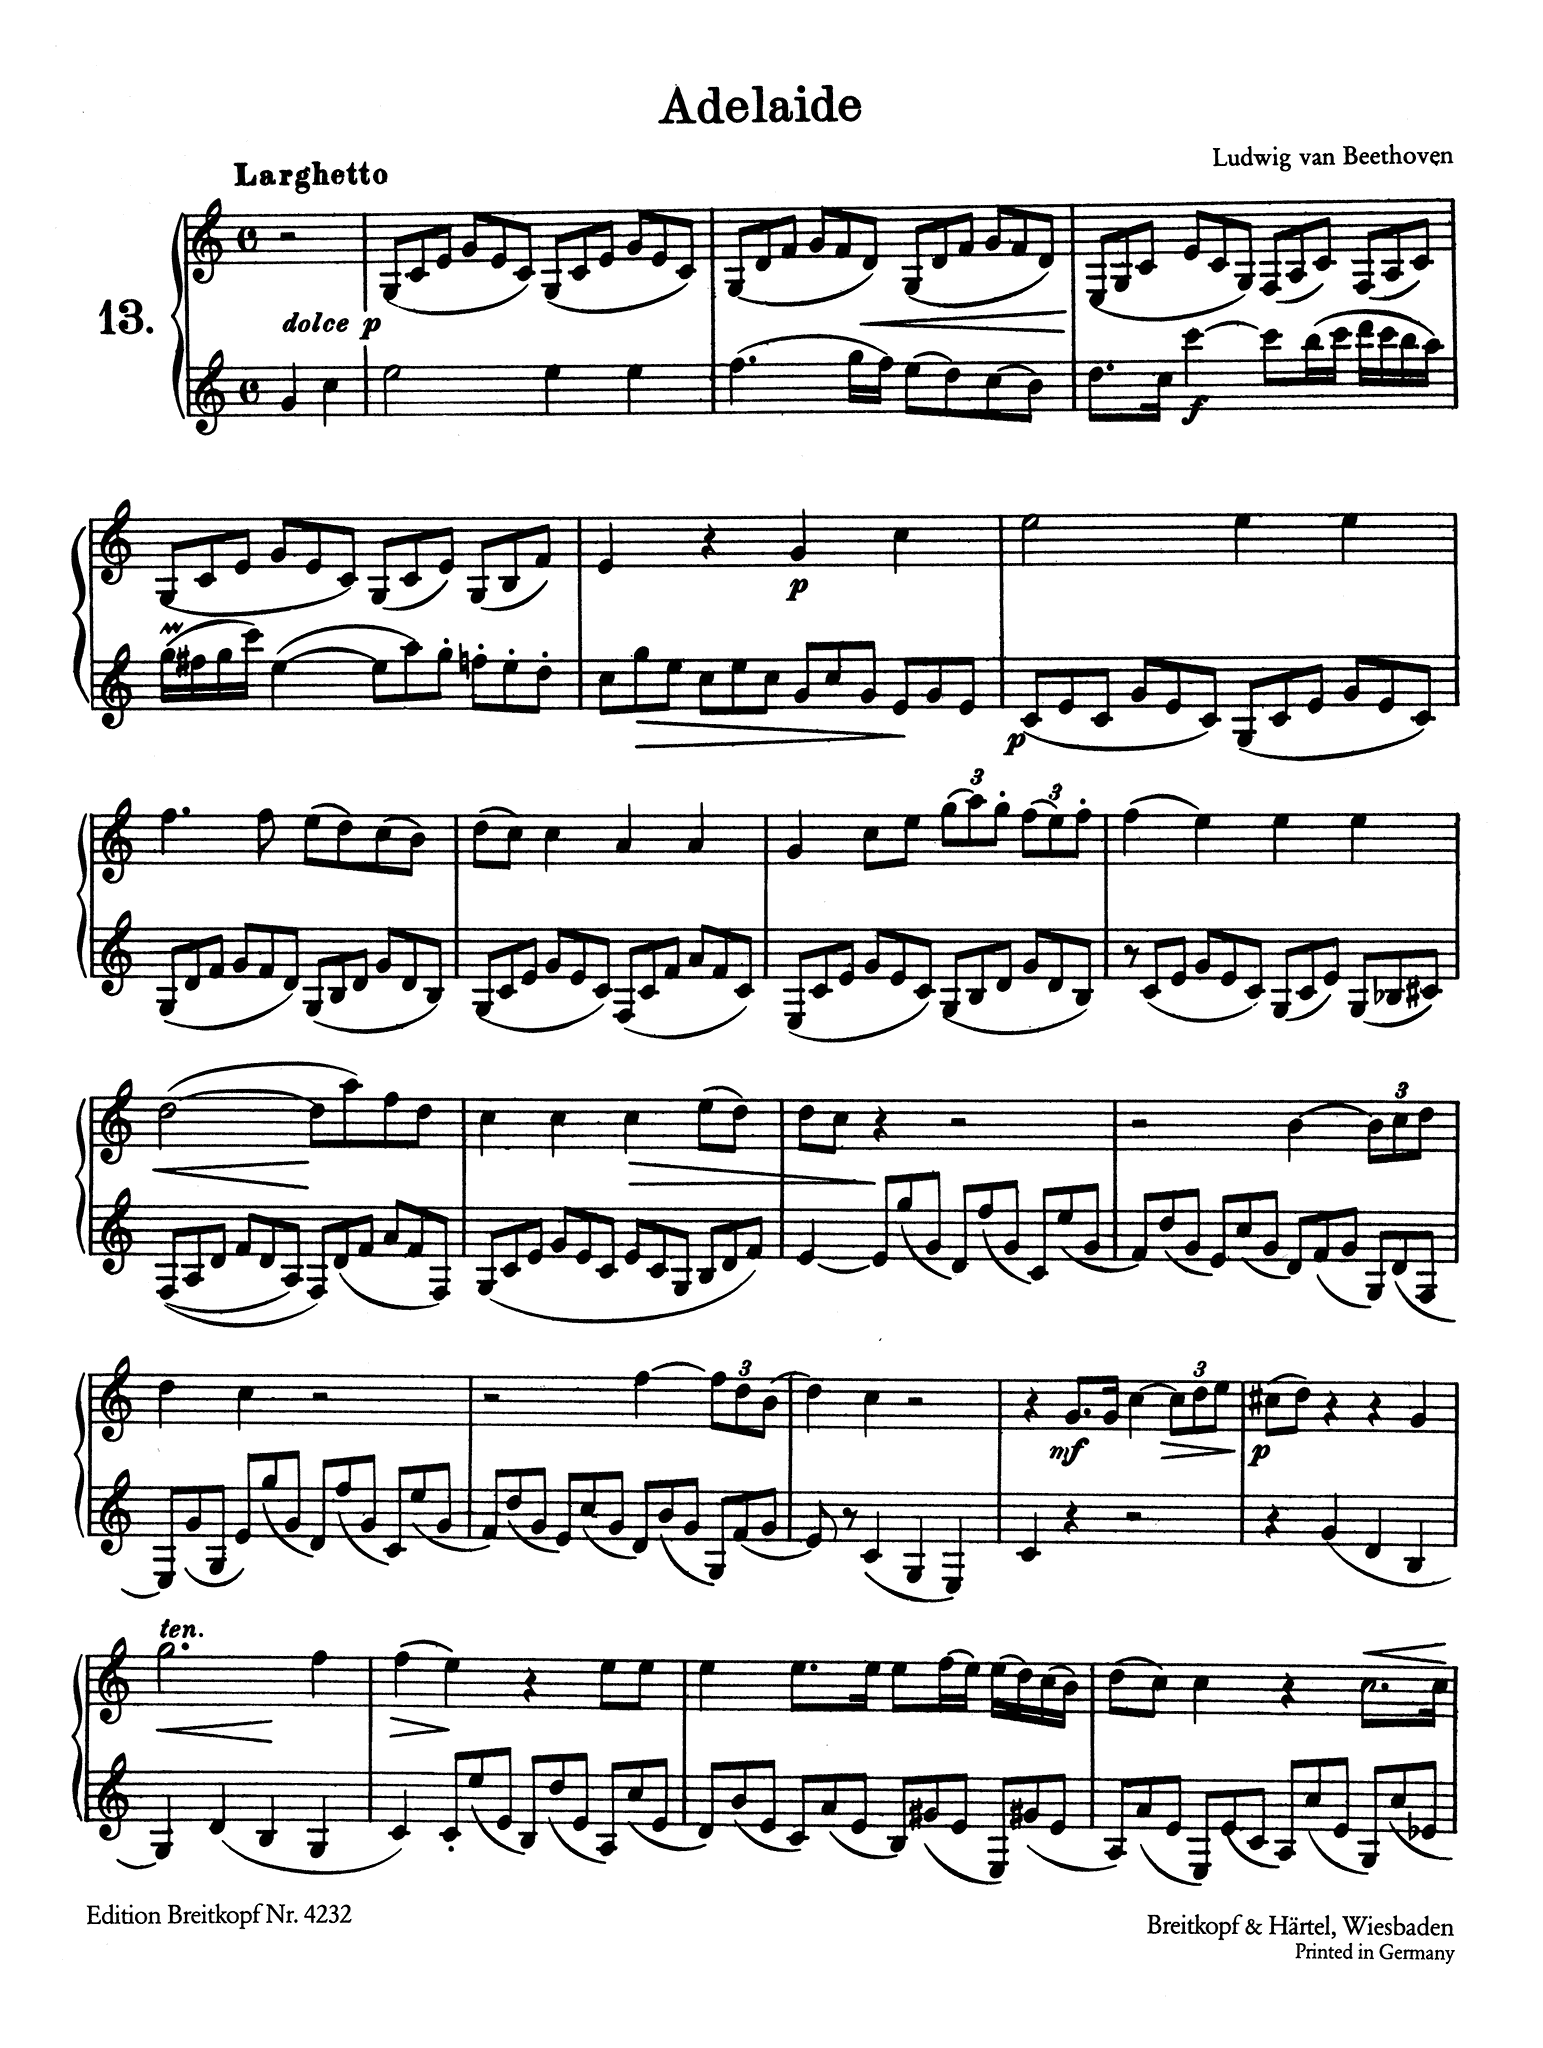 Wiedemann Clarinet Studies, Book 2 page 2